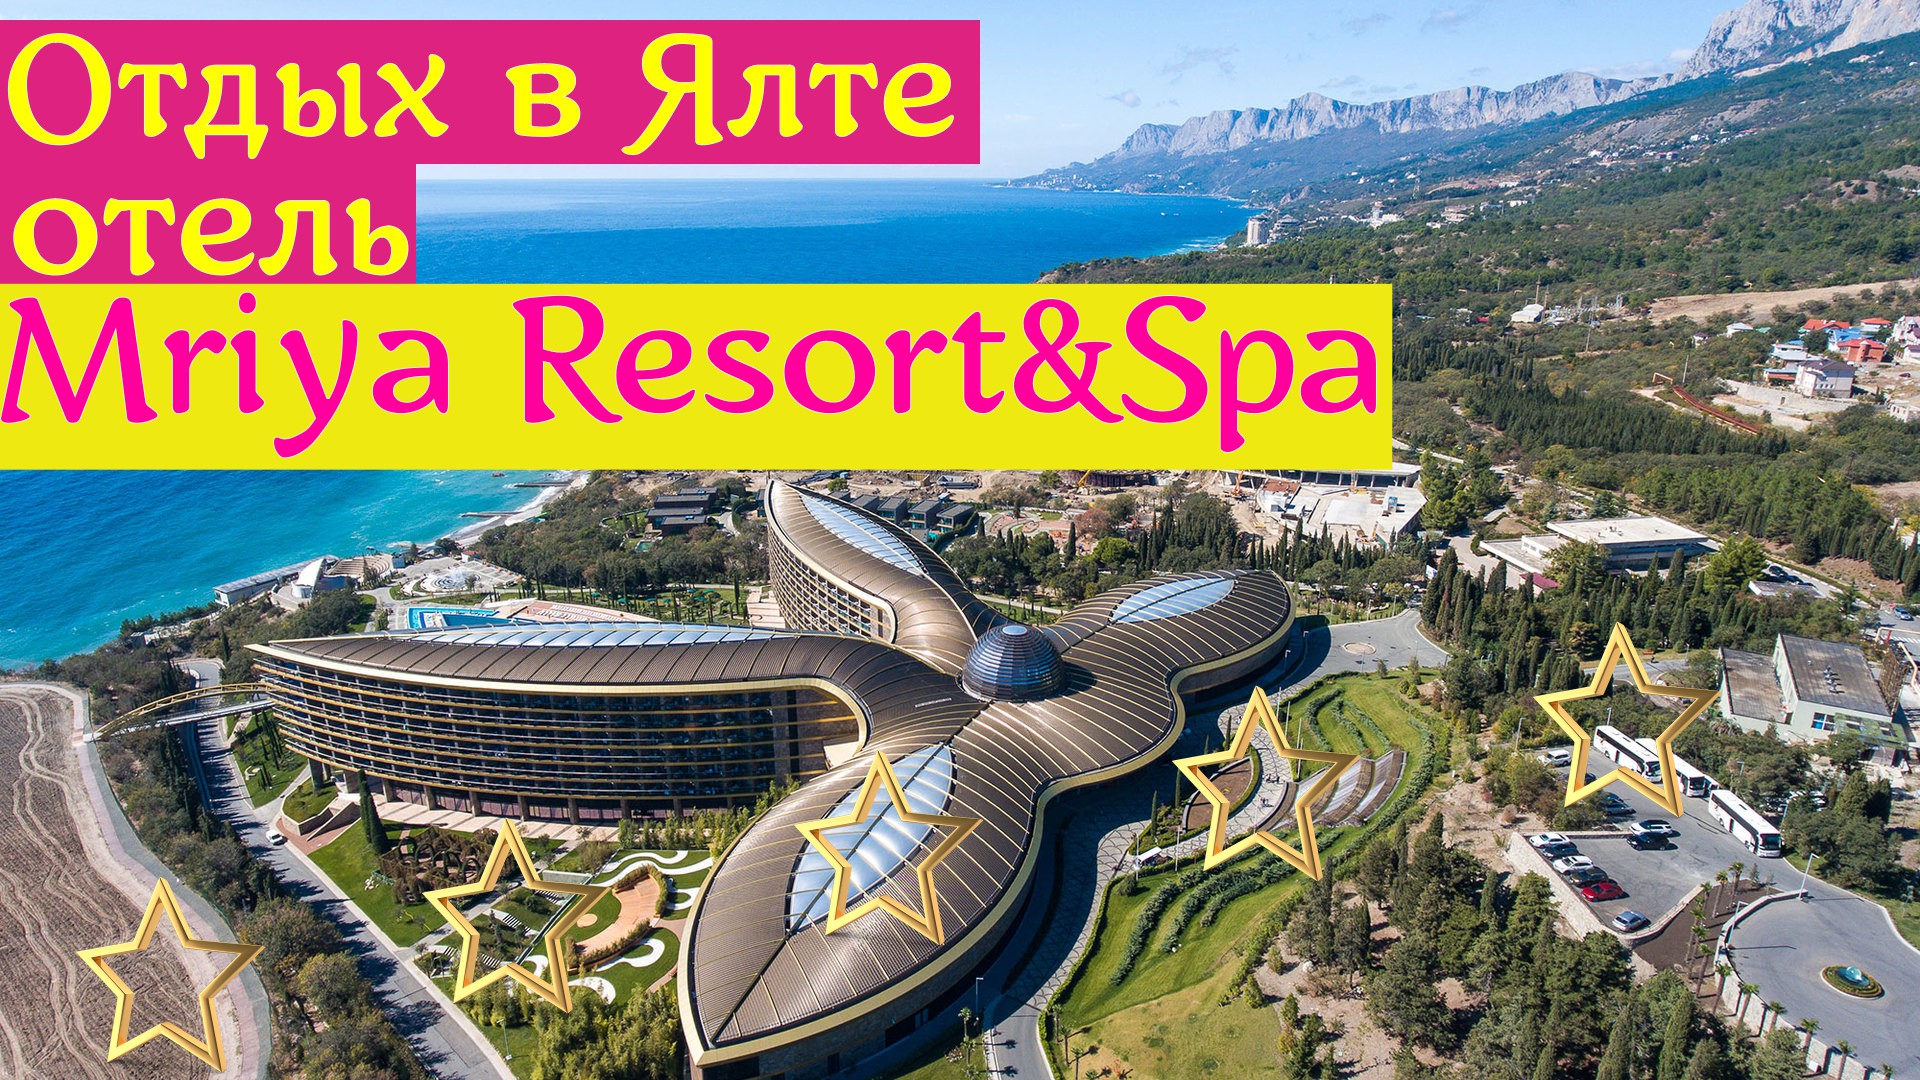 Отдых в Ялте |отель Mriya Resort&Spa ( первая линия ) | Крым